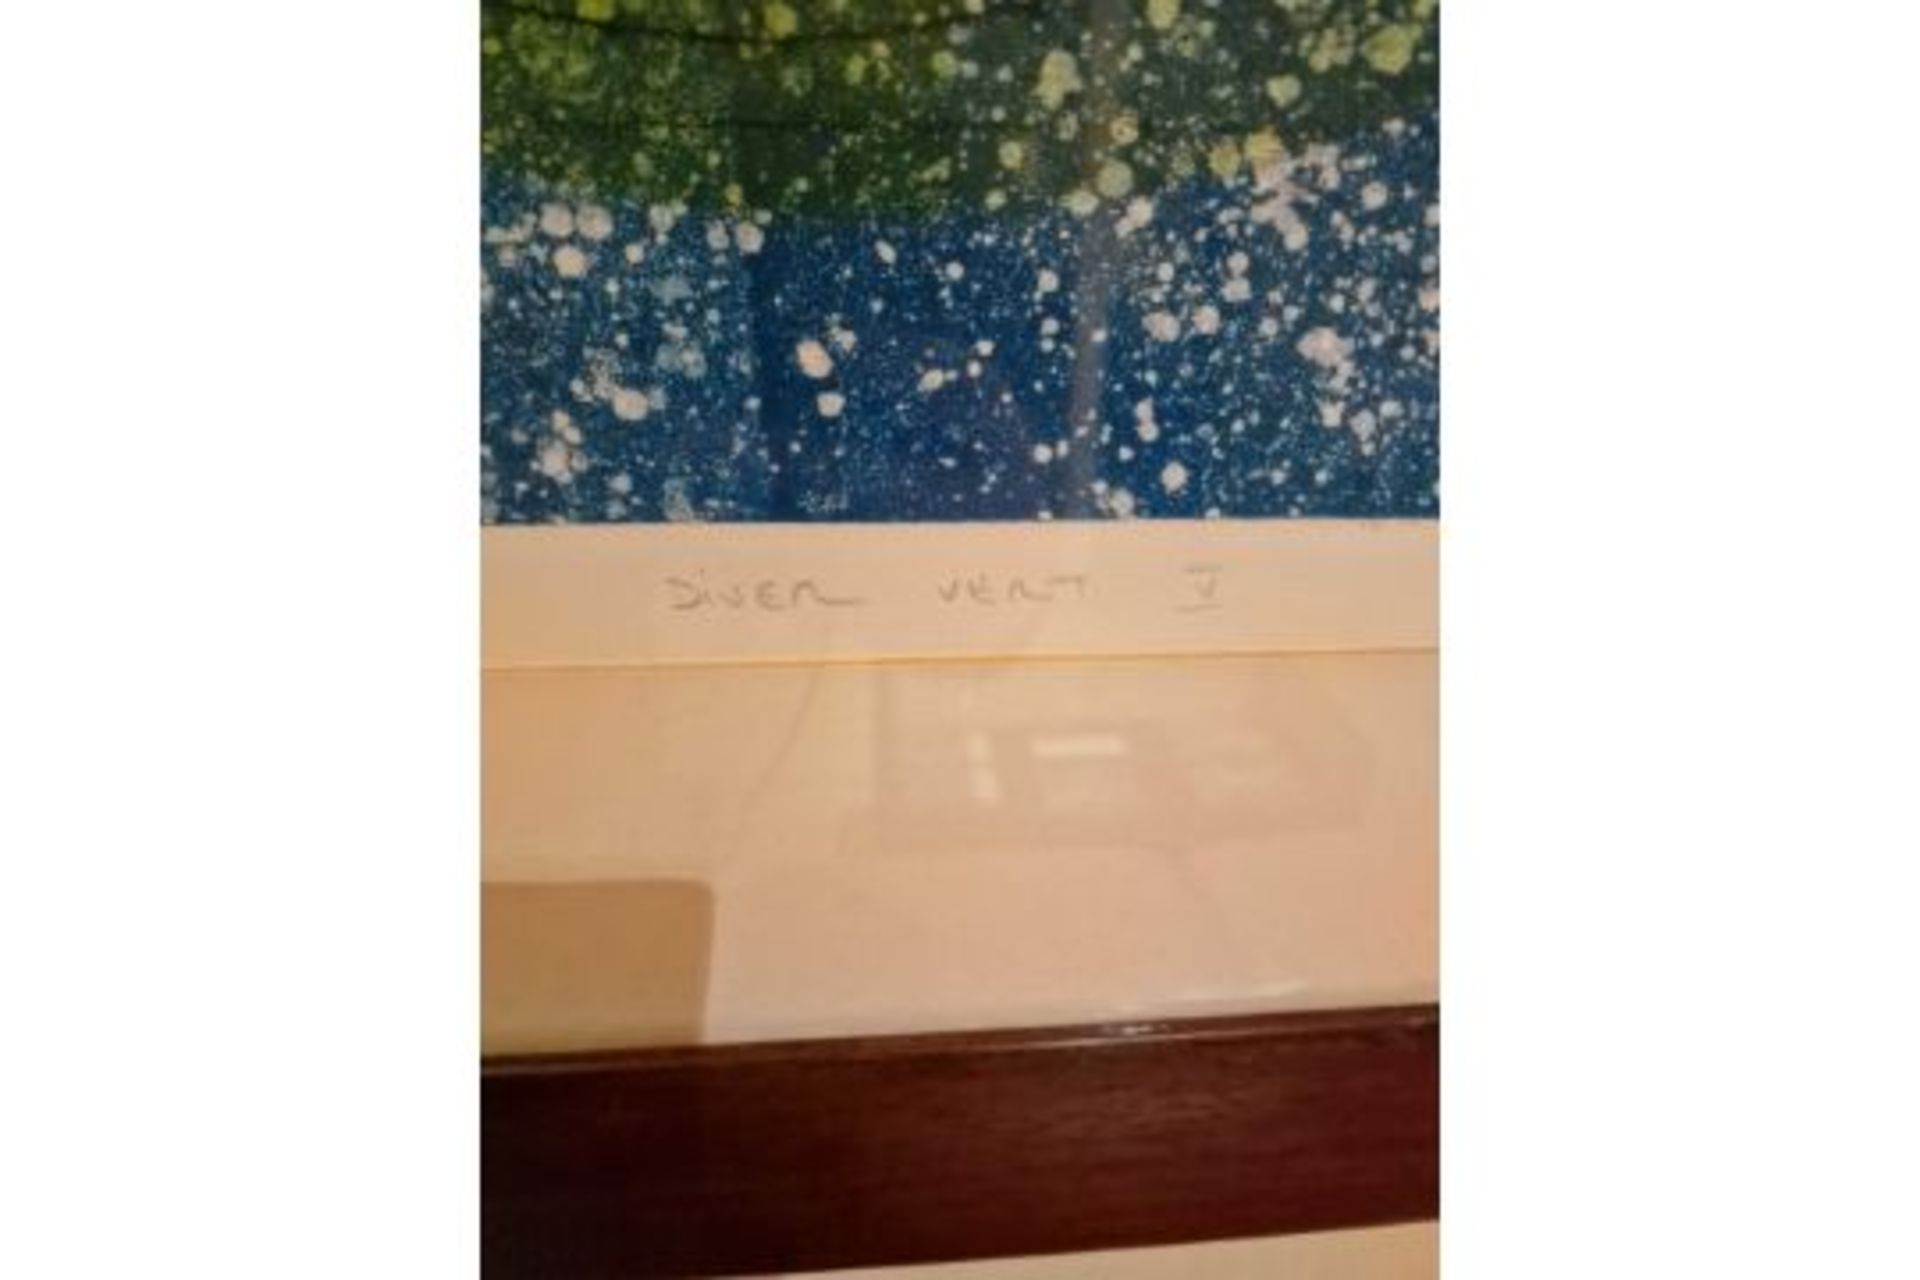 Framed Art Work Titled Diver Vert V Signed In Glazed Walnut Coloured Frame 90 x 77cm - Image 4 of 5